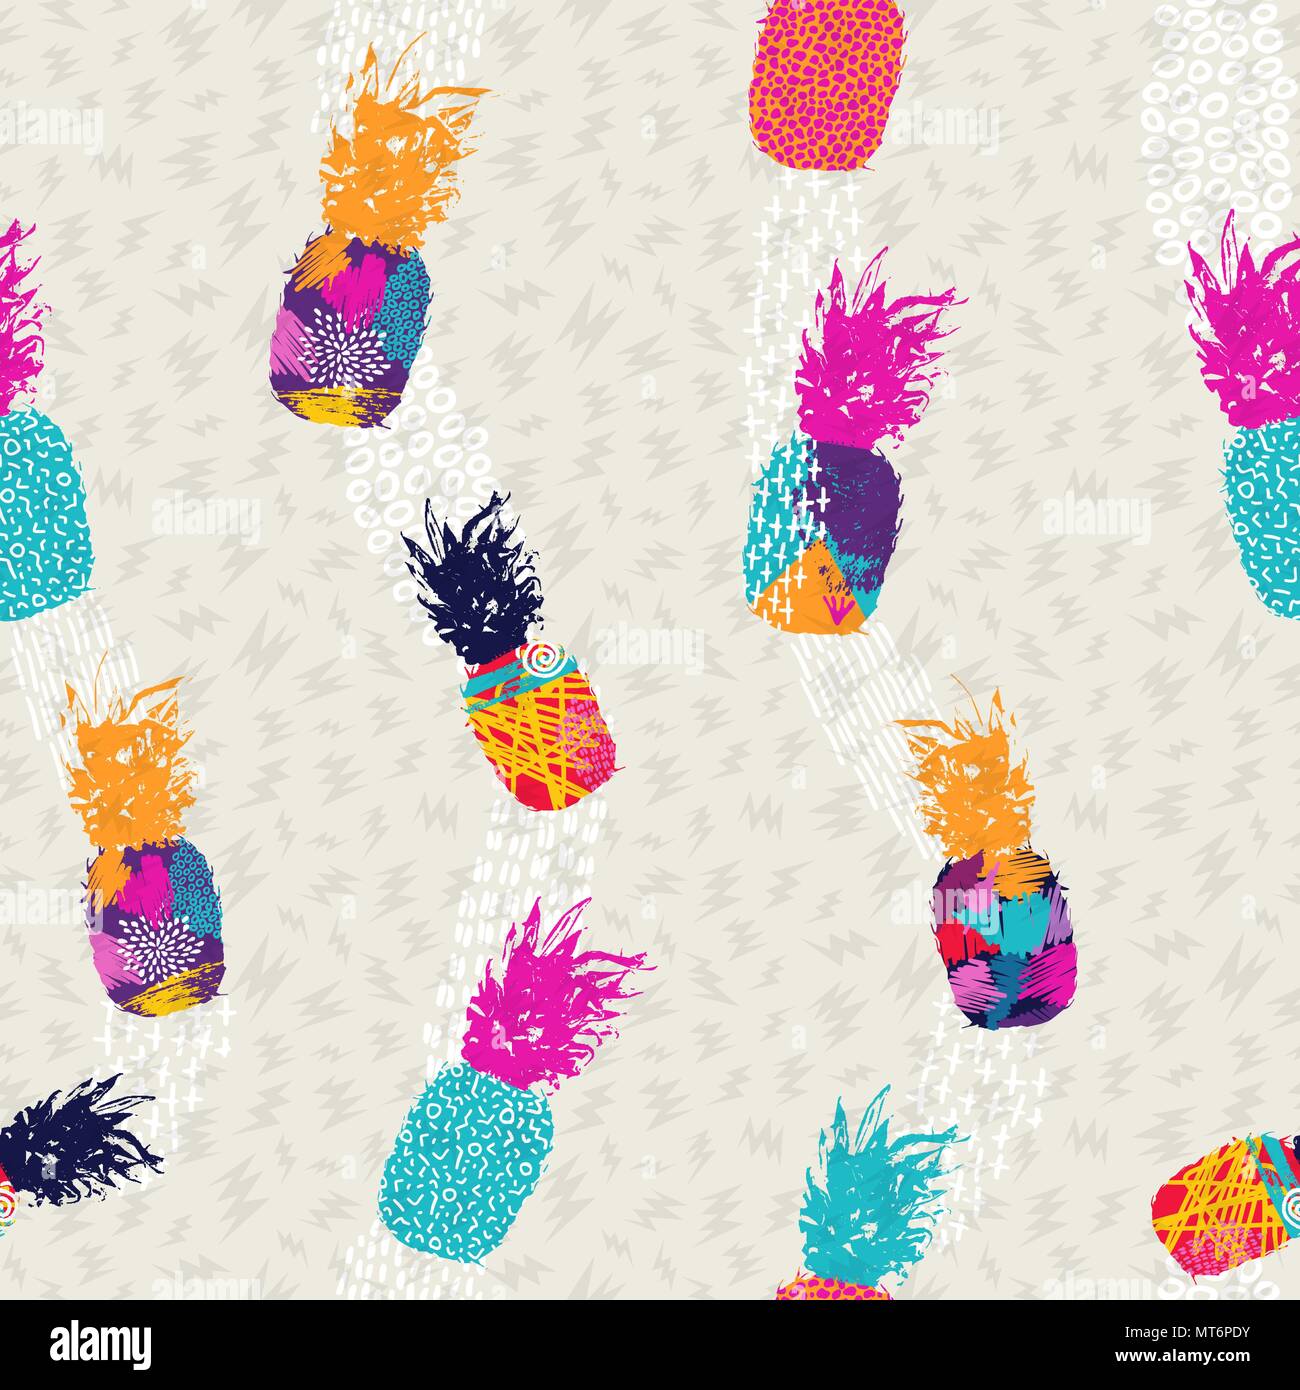 Sommer nahtlose Muster, Ananas Obst mit abstrakte farbenfrohe Kunst ideal für Spaß Mode drucken Papier oder Gewebe. EPS 10 Vektor. Stock Vektor